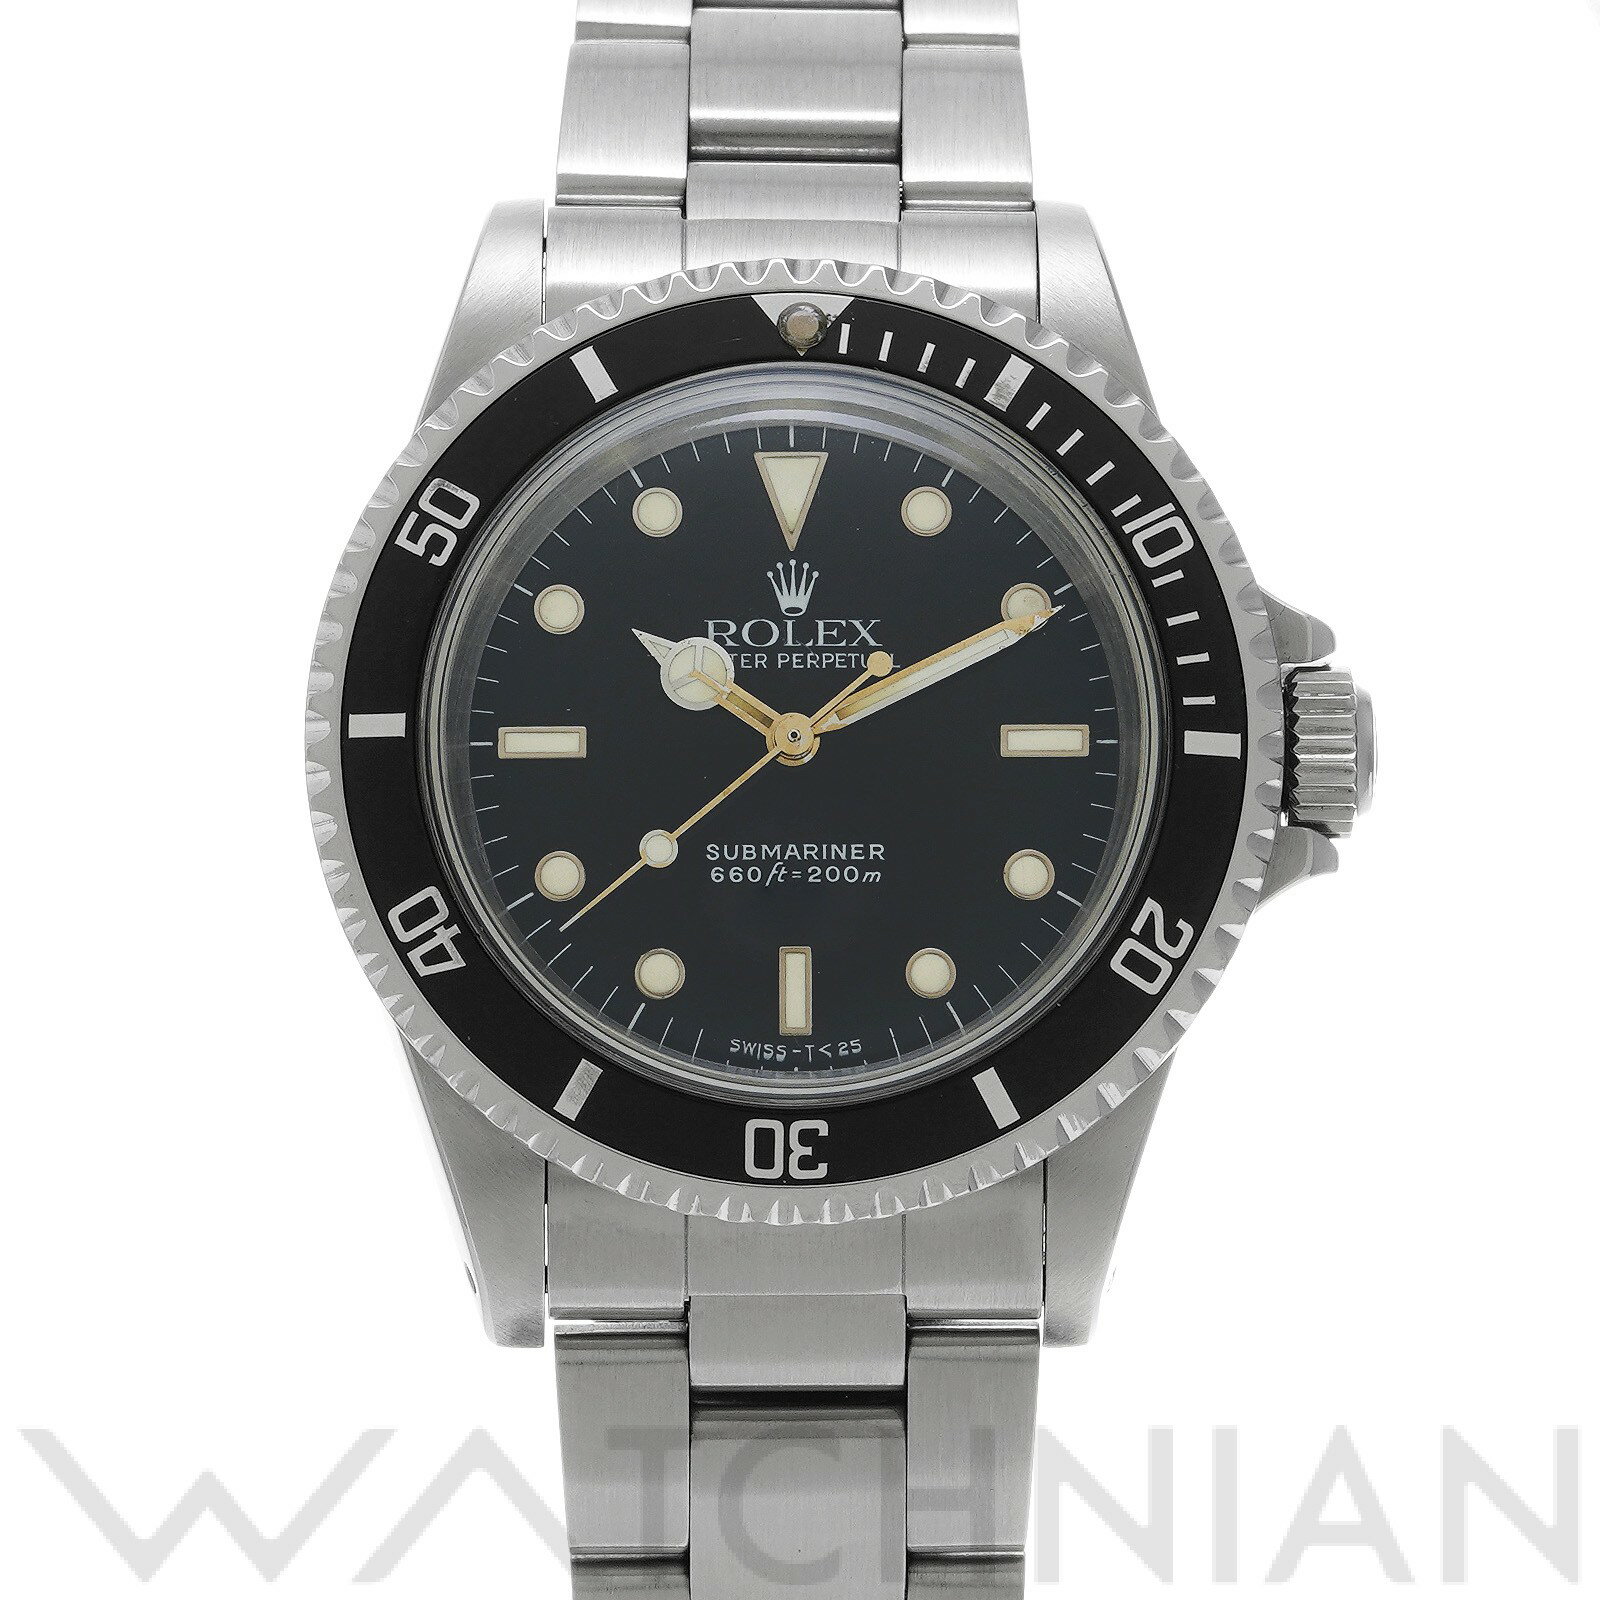 【中古】 ロレックス ROLEX サブマリーナ スパイダーダイヤル 5513 95番台(1986年頃製造) ブラック メンズ 腕時計